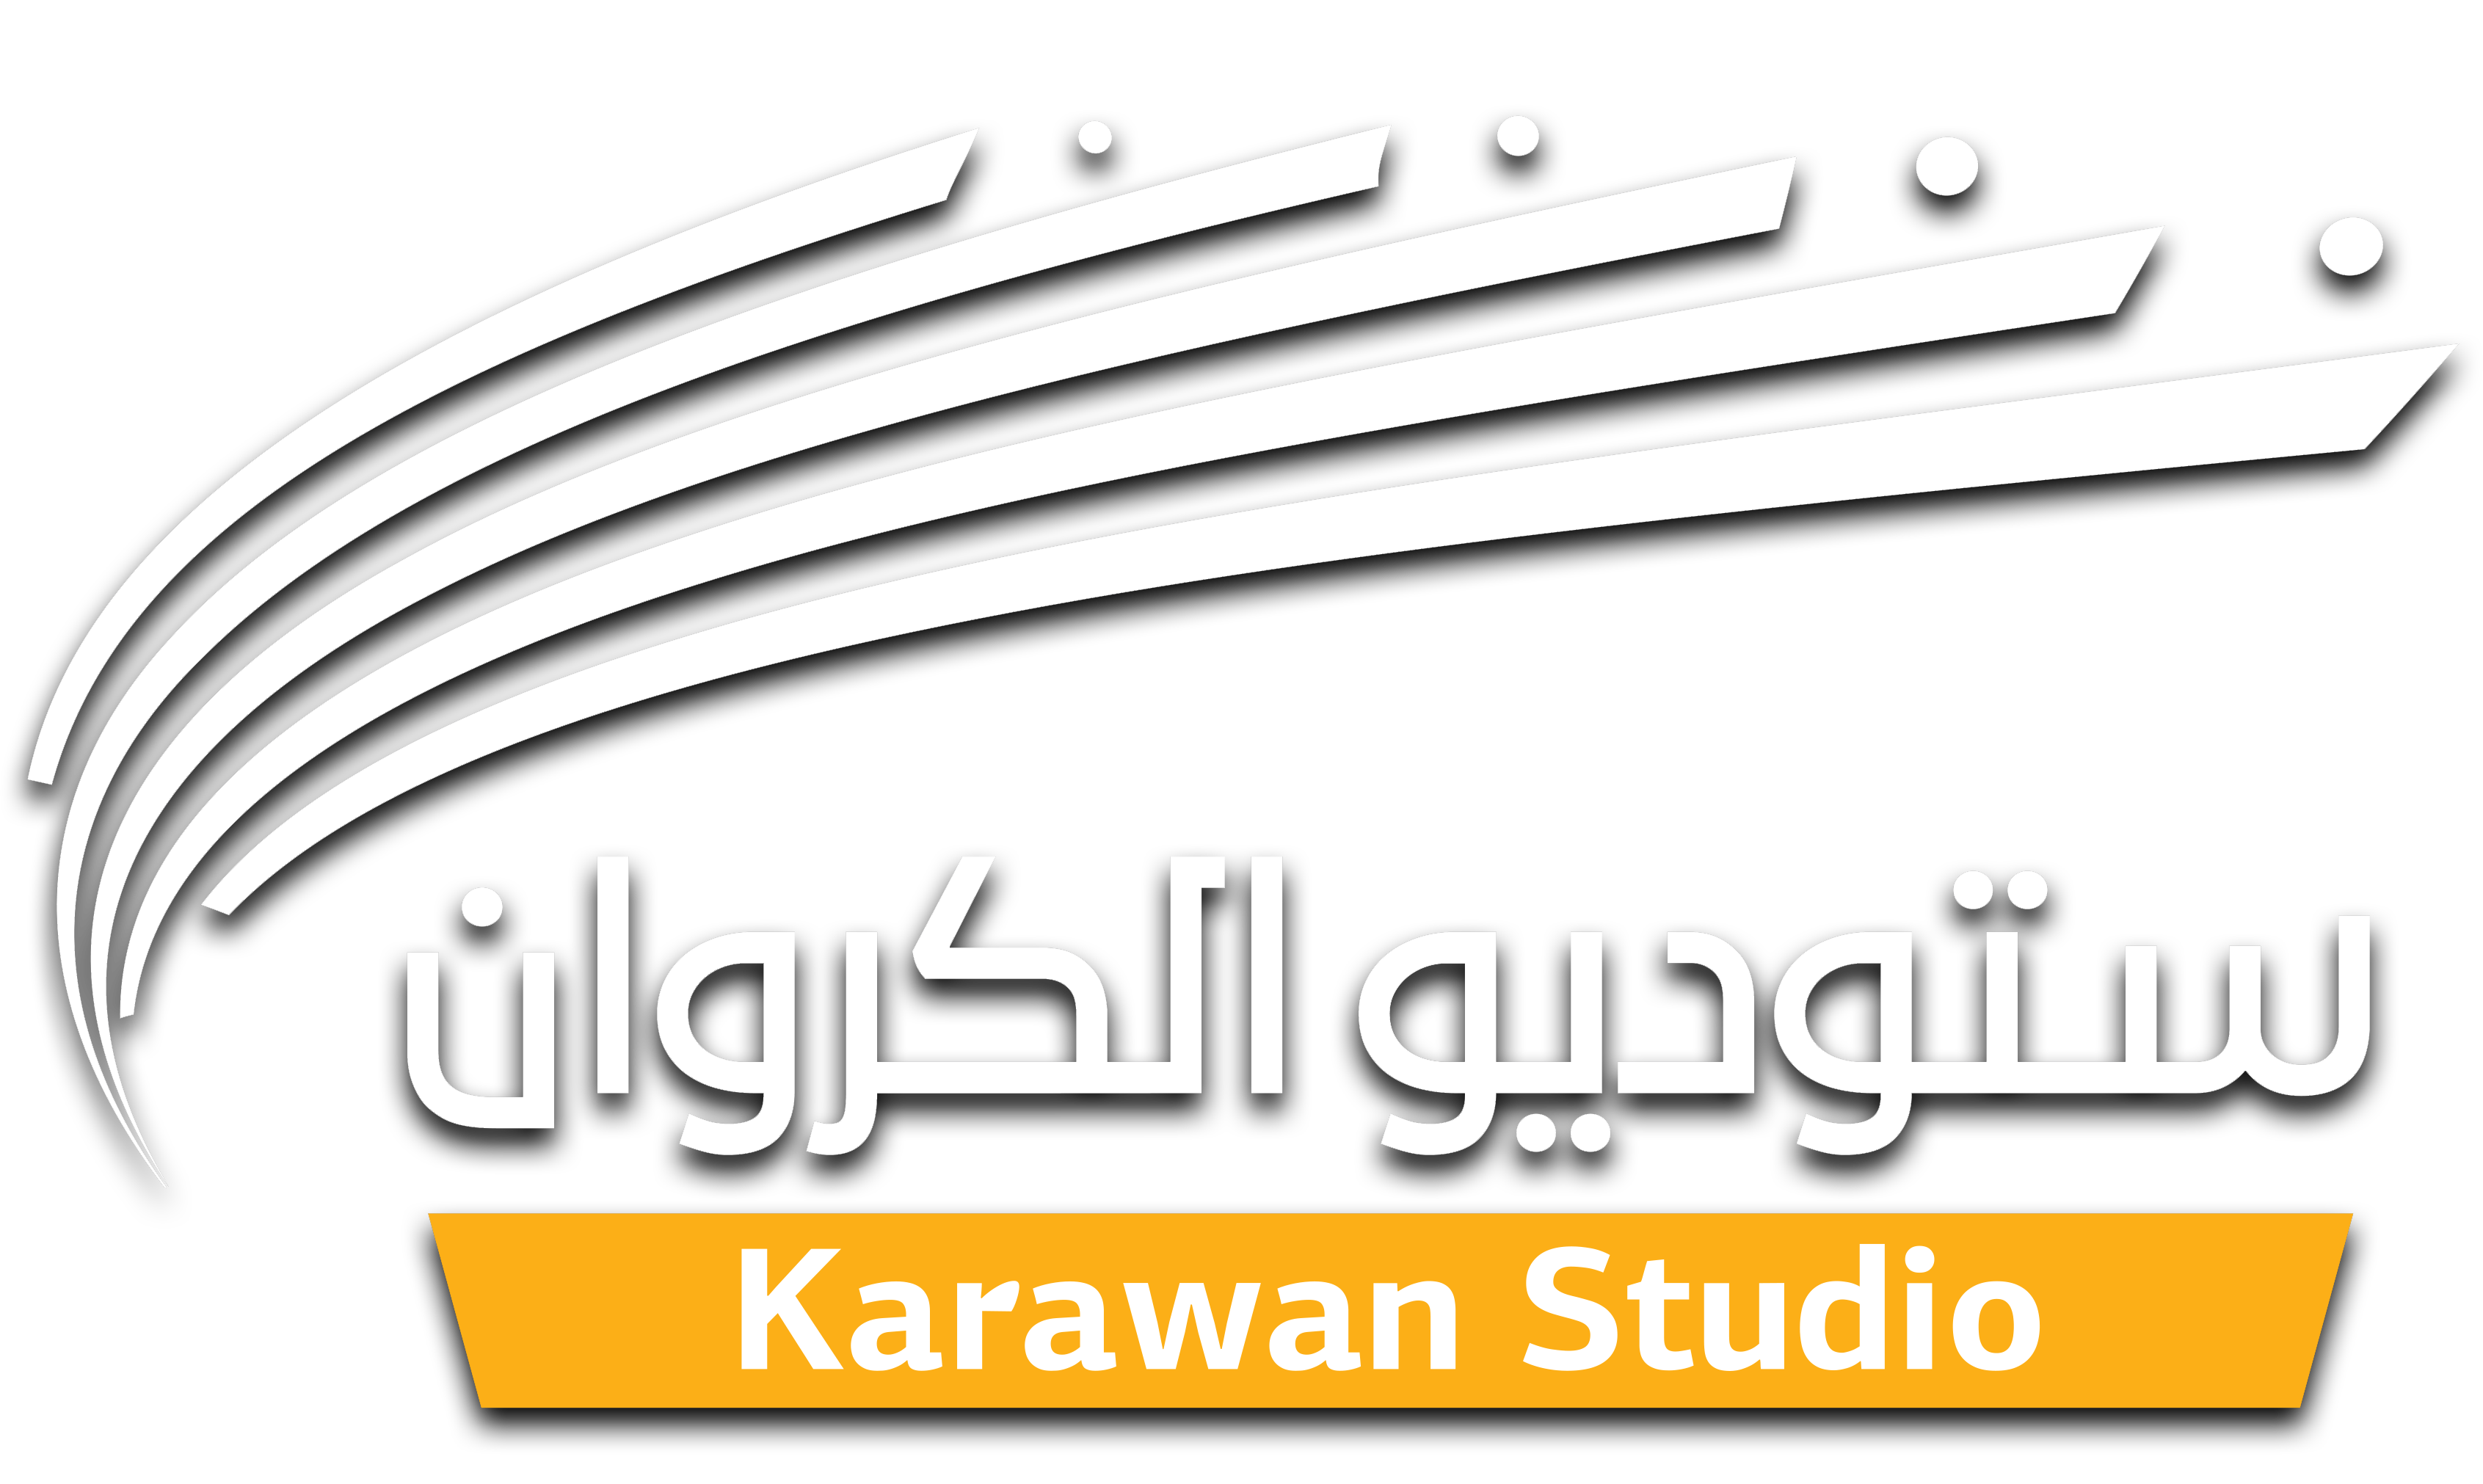 KARAWAN STUDIO